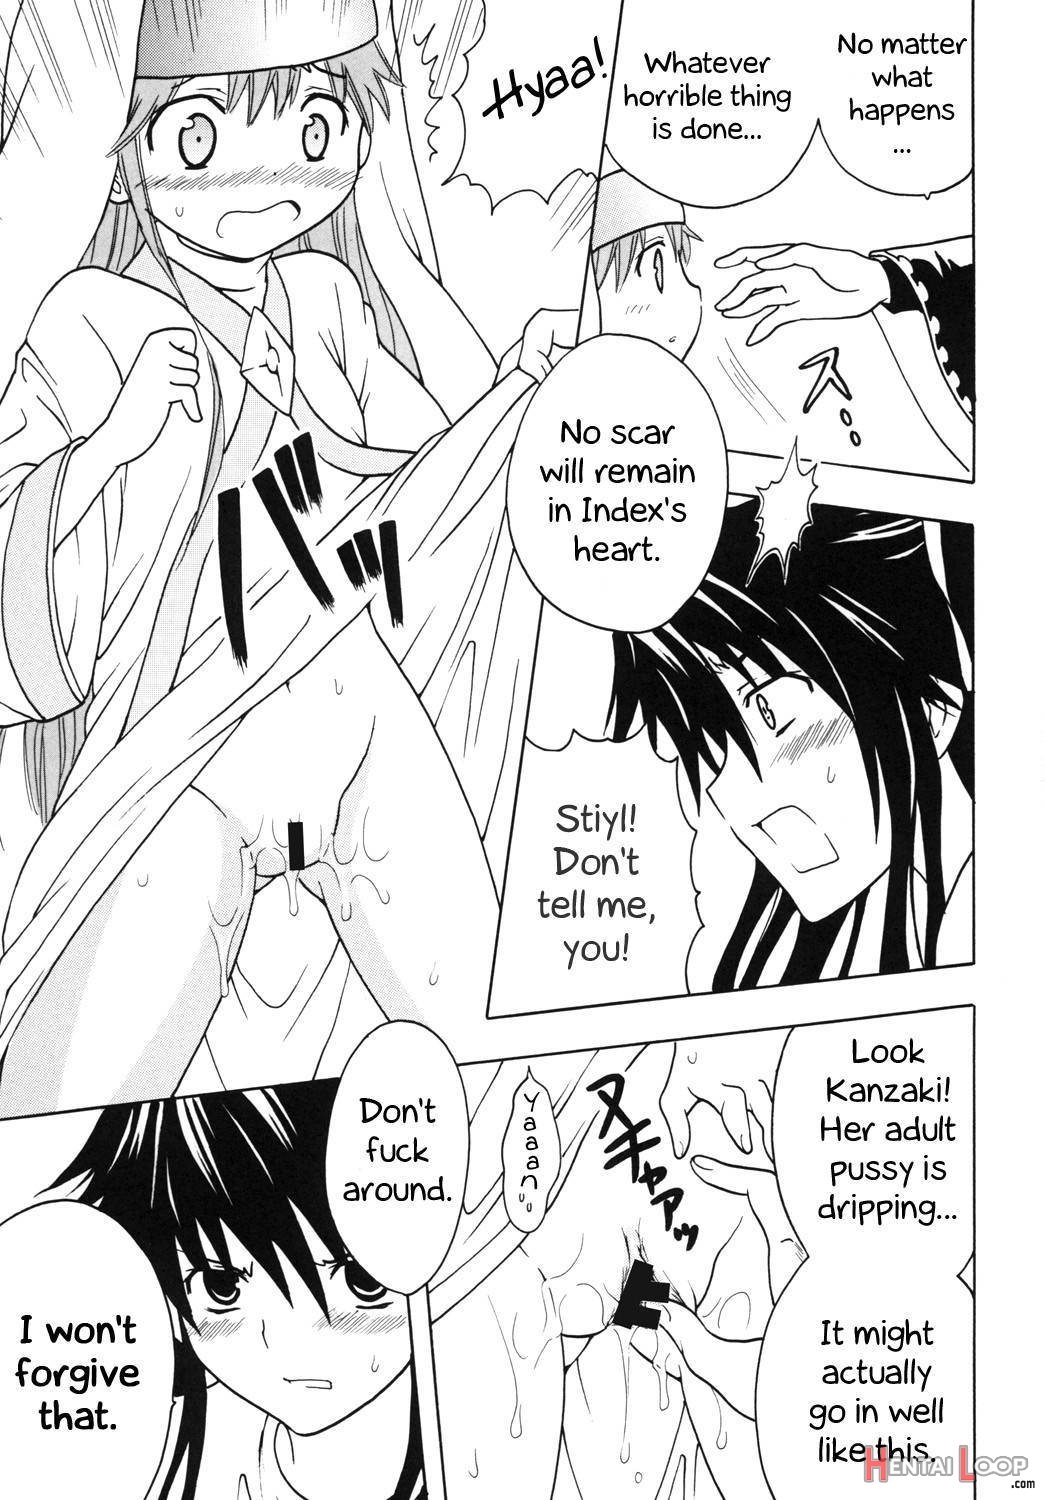 Toaru Otaku no Index #1 page 32